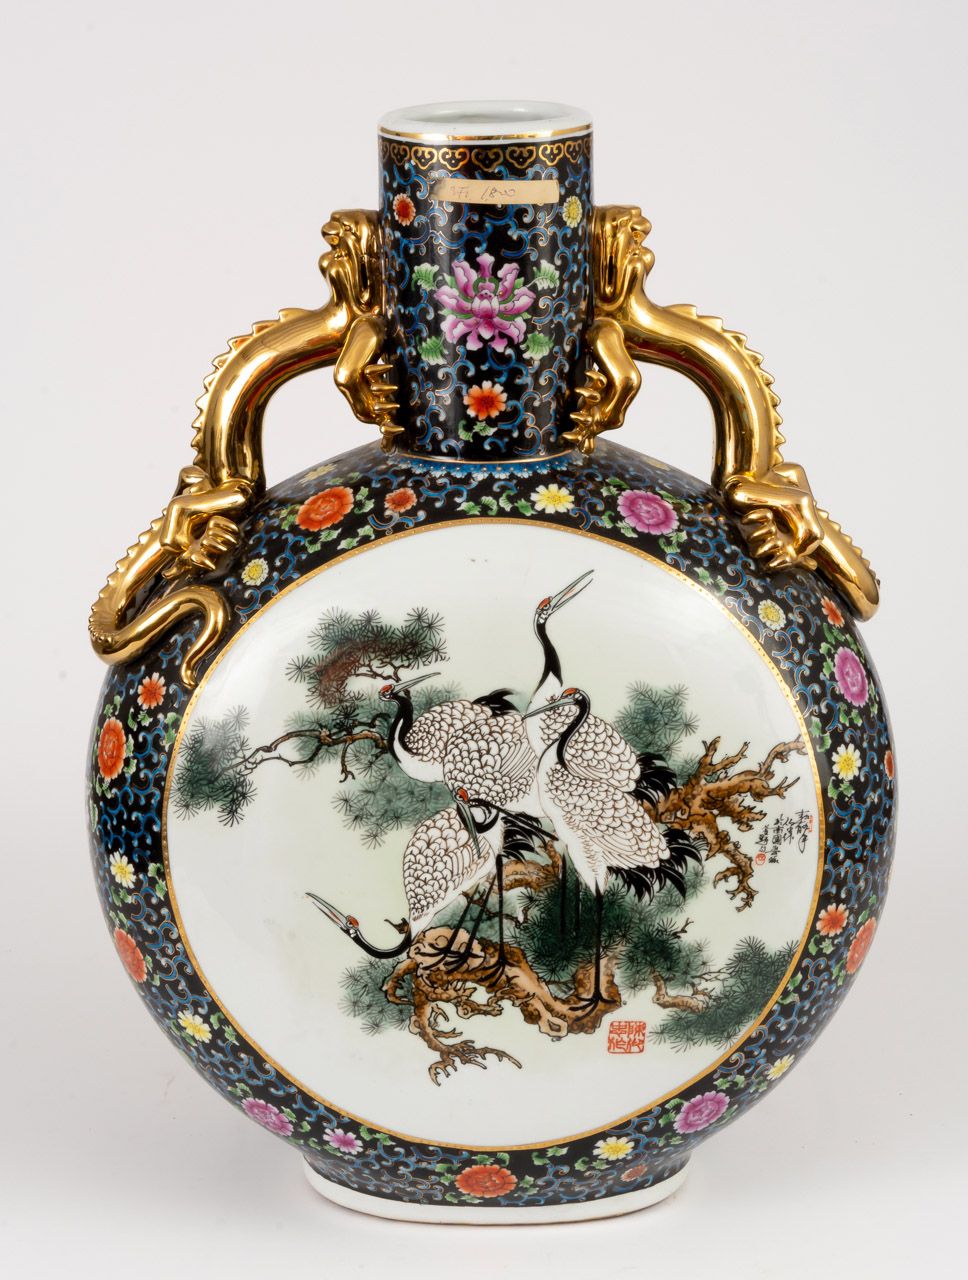 SEHR GROSSE VASE MIT BLUMEN UND VÖGELN China, porcelain, hand painted

61 x 45 x&hellip;